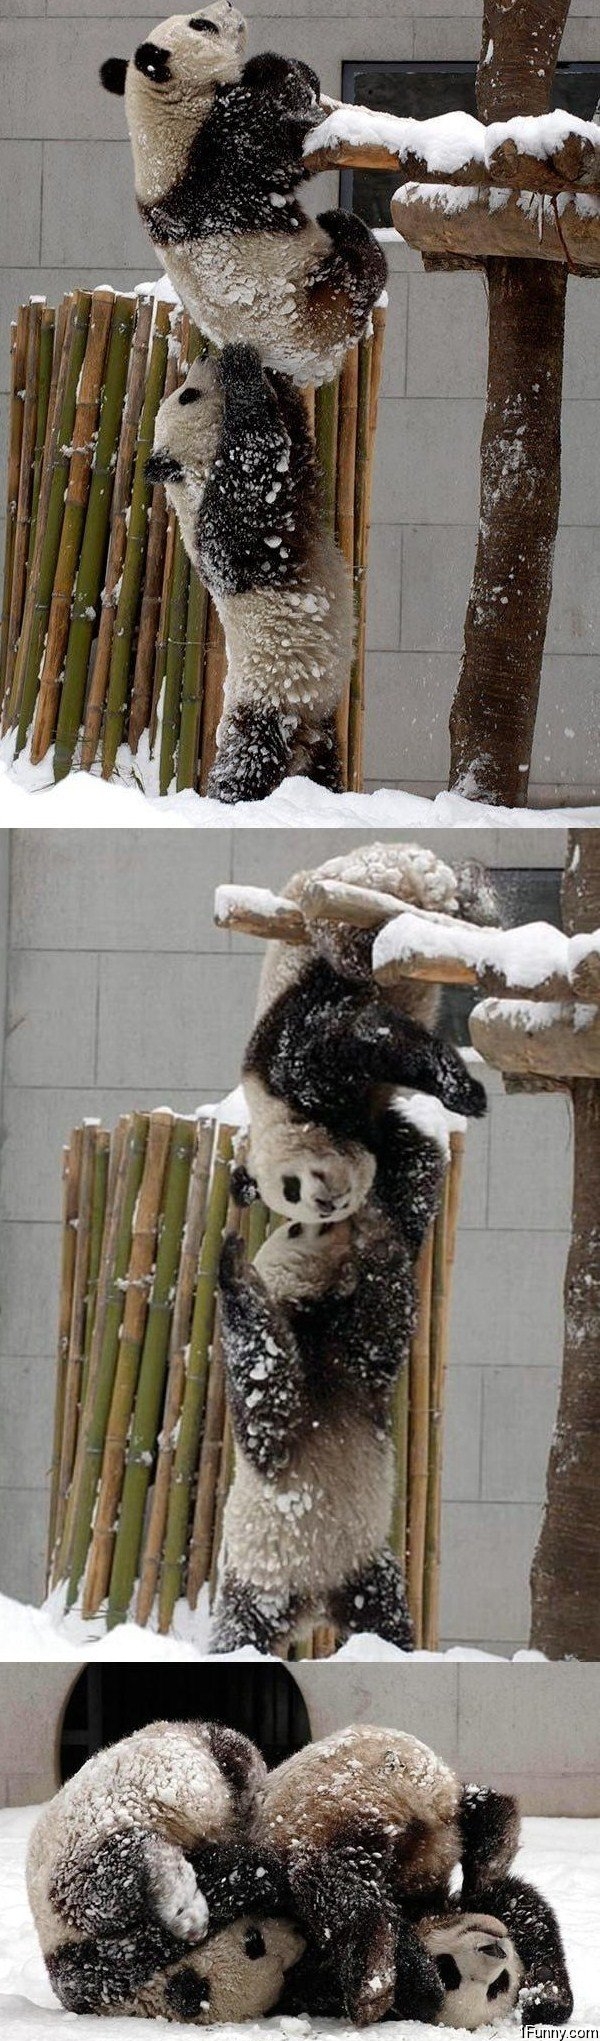 panda-help